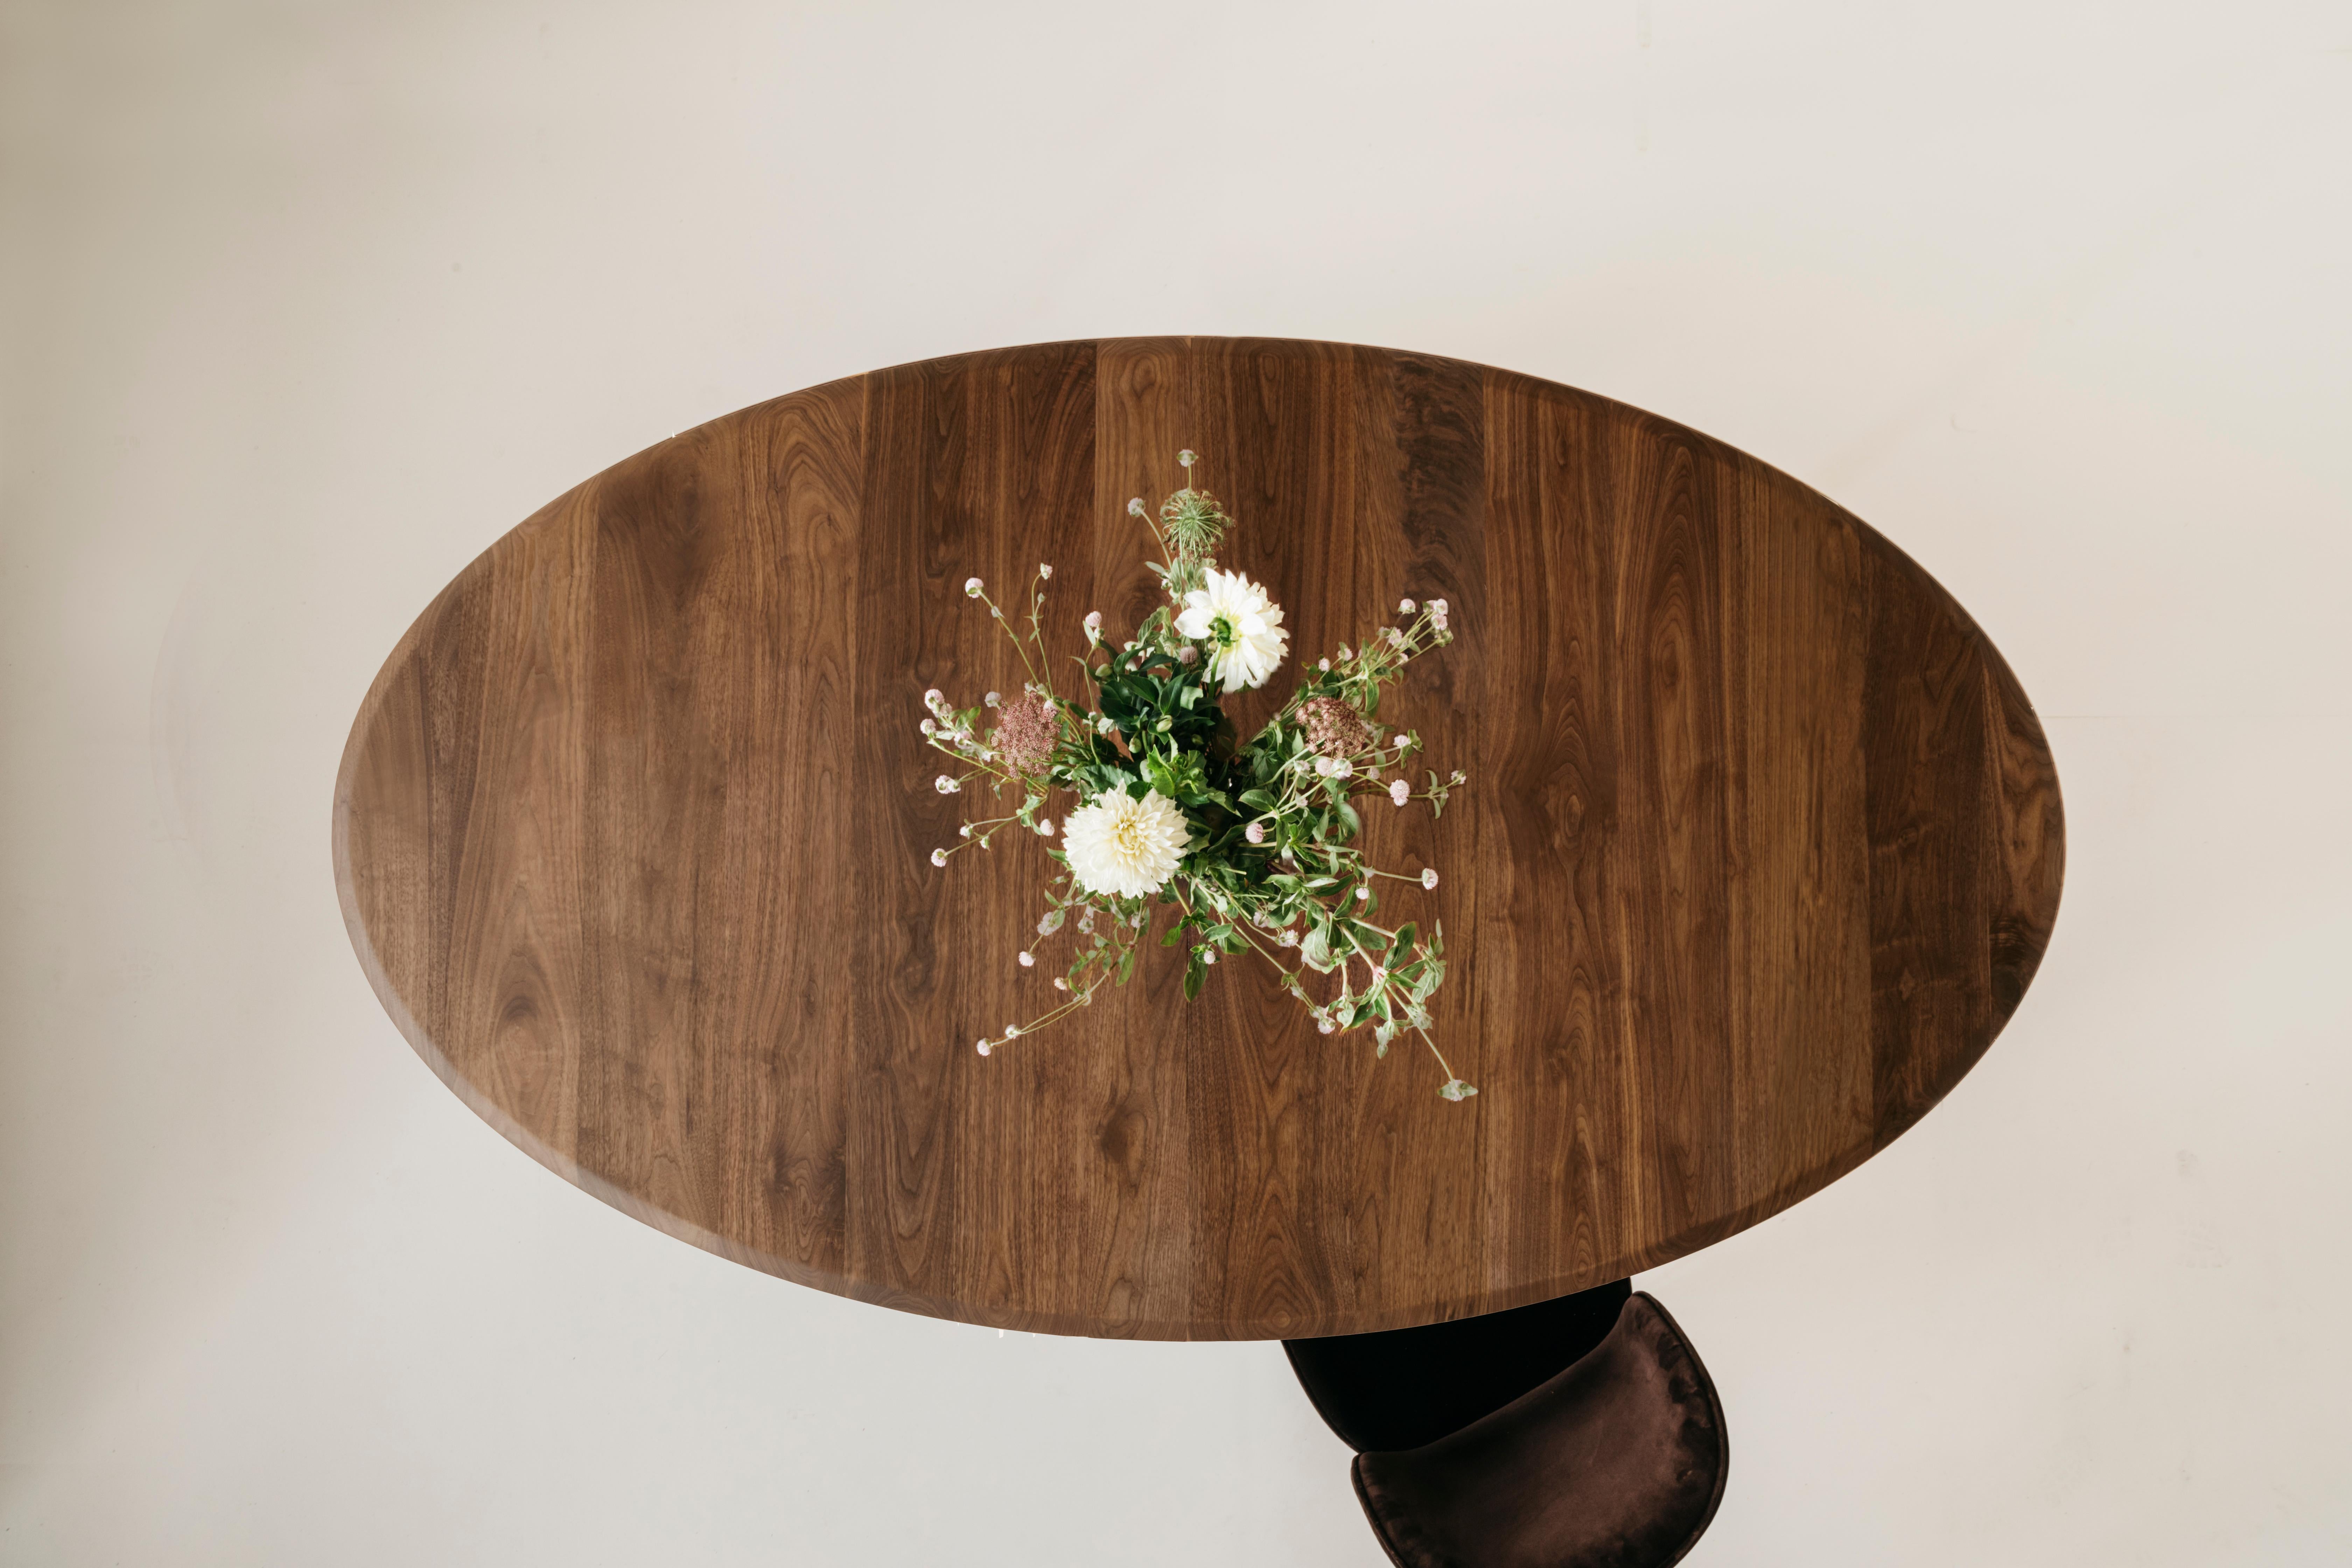 Il tavolo da pranzo ovale Richard Watson offre una forma comoda e intima per cenare in compagnia. Questo tavolo può essere allungato grazie all'utilizzo di una ferramenta liscia che si espande fino a contenere un'anta da 20 pollici. Misura: